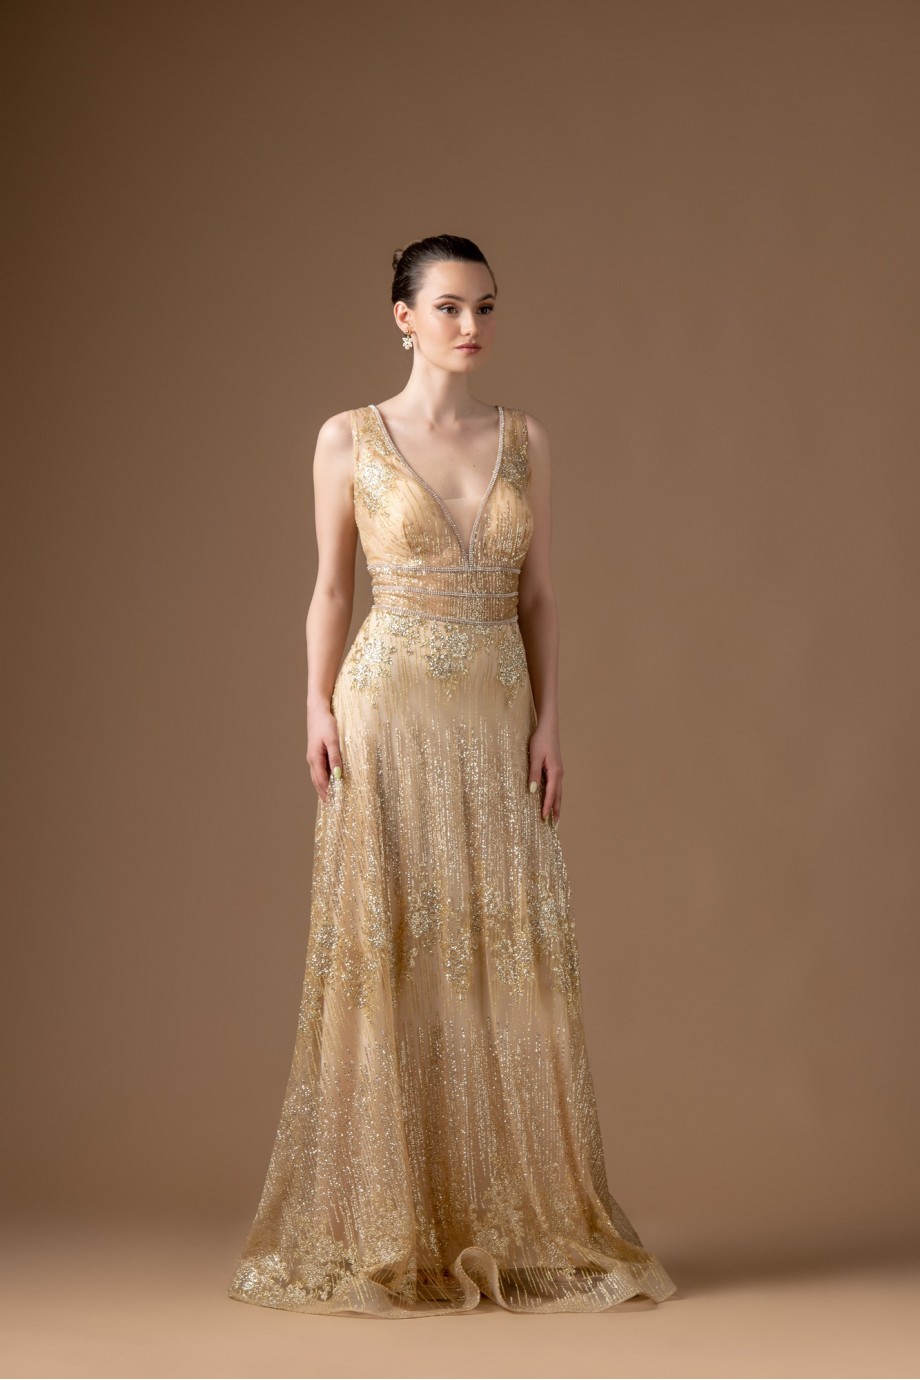 Μακρύ  χρυσό φόρεμα με glitter σε αλφα γραμμή